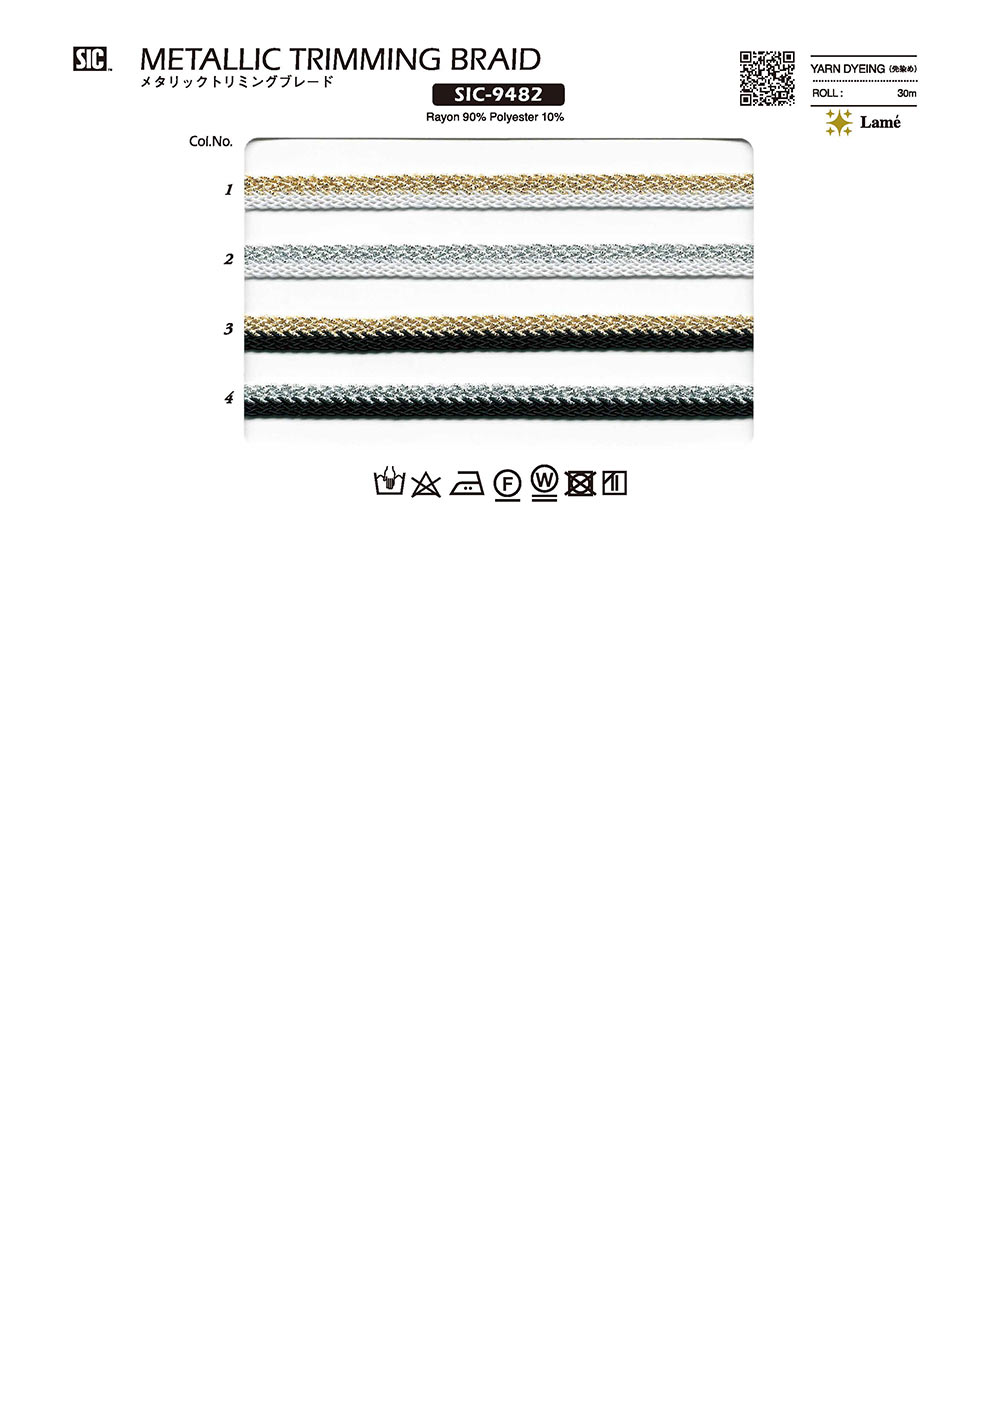 SIC-9482 Metallic Trimming Braid[Ribbon Tape Cord] SHINDO(SIC)